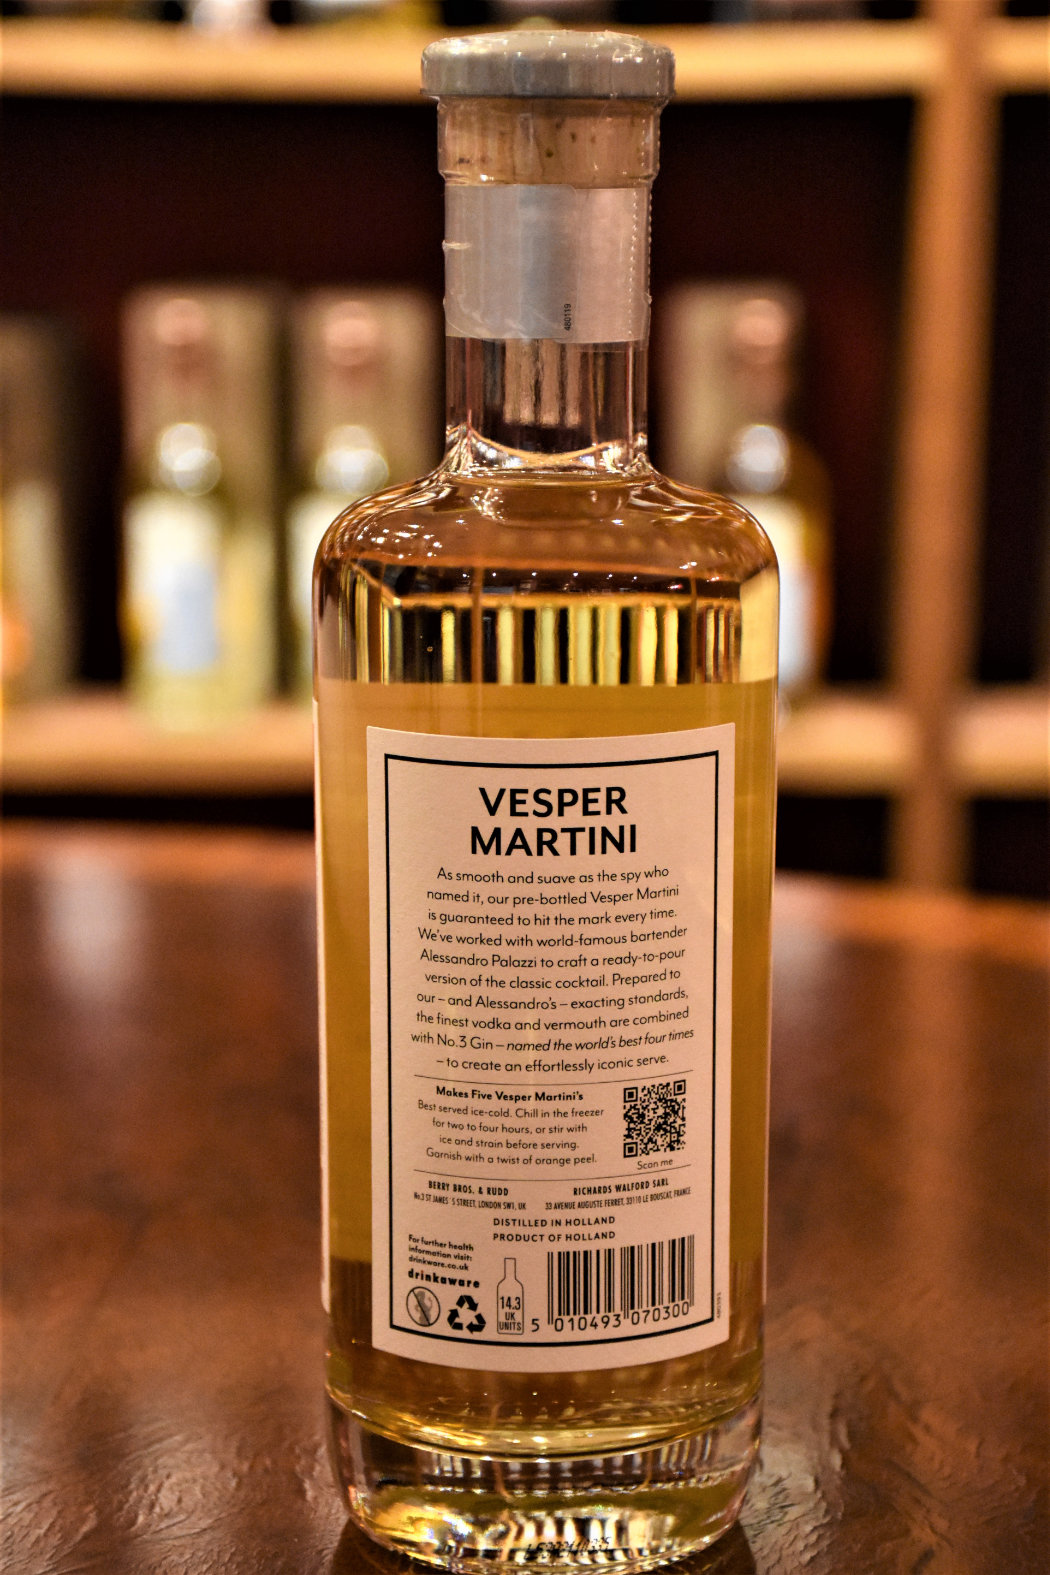 Vesper Martini No. 3, 28,6% Alc.Vol., Berry Bros.&Rudd